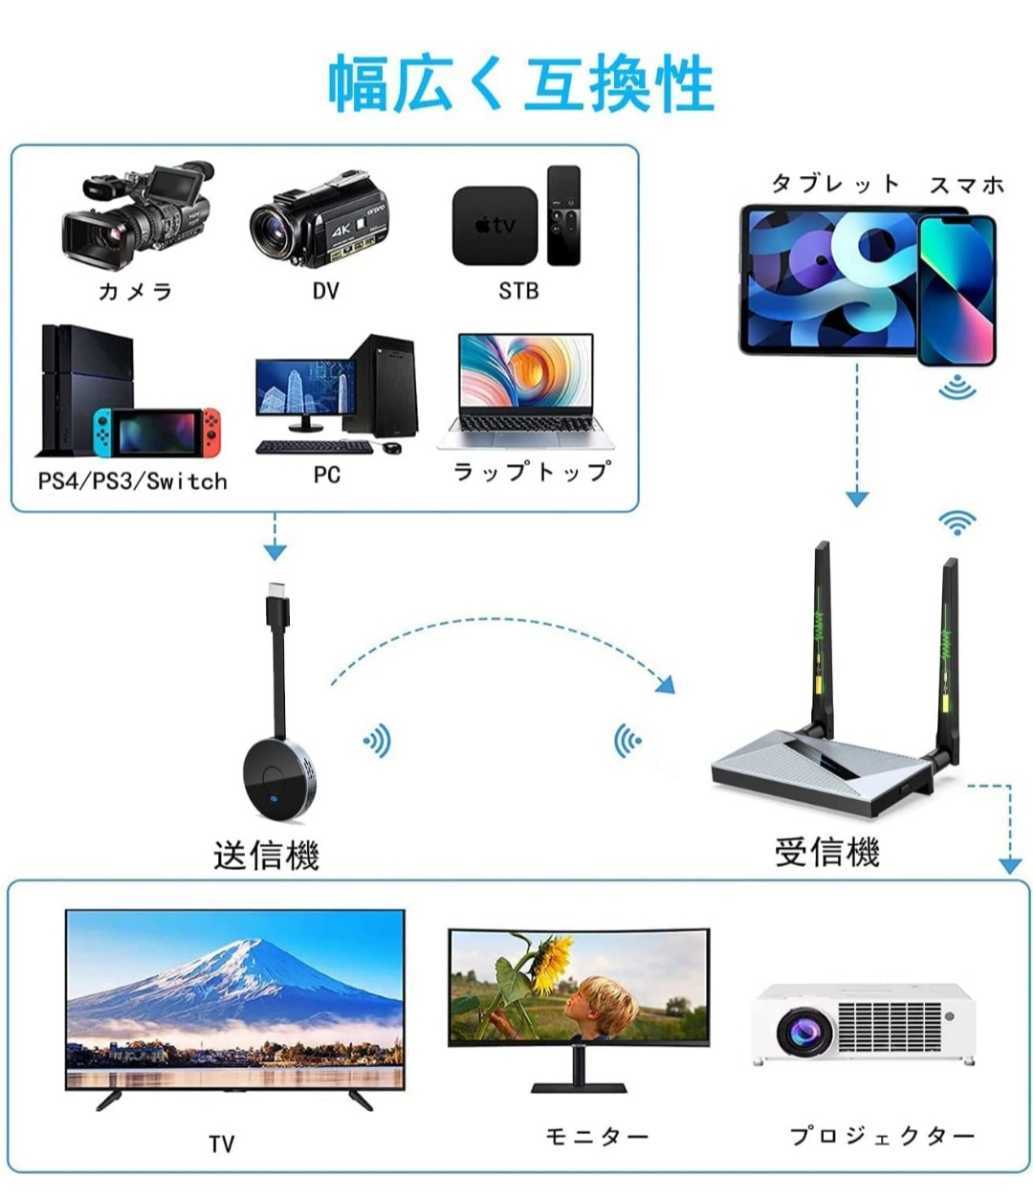 ワイヤレス HDMI 送受信機セット 5GH 無線 ワイヤレスhdmiエクステンダー トランスミッター HDMI無線化キット4K解像度30Hz 2.4G